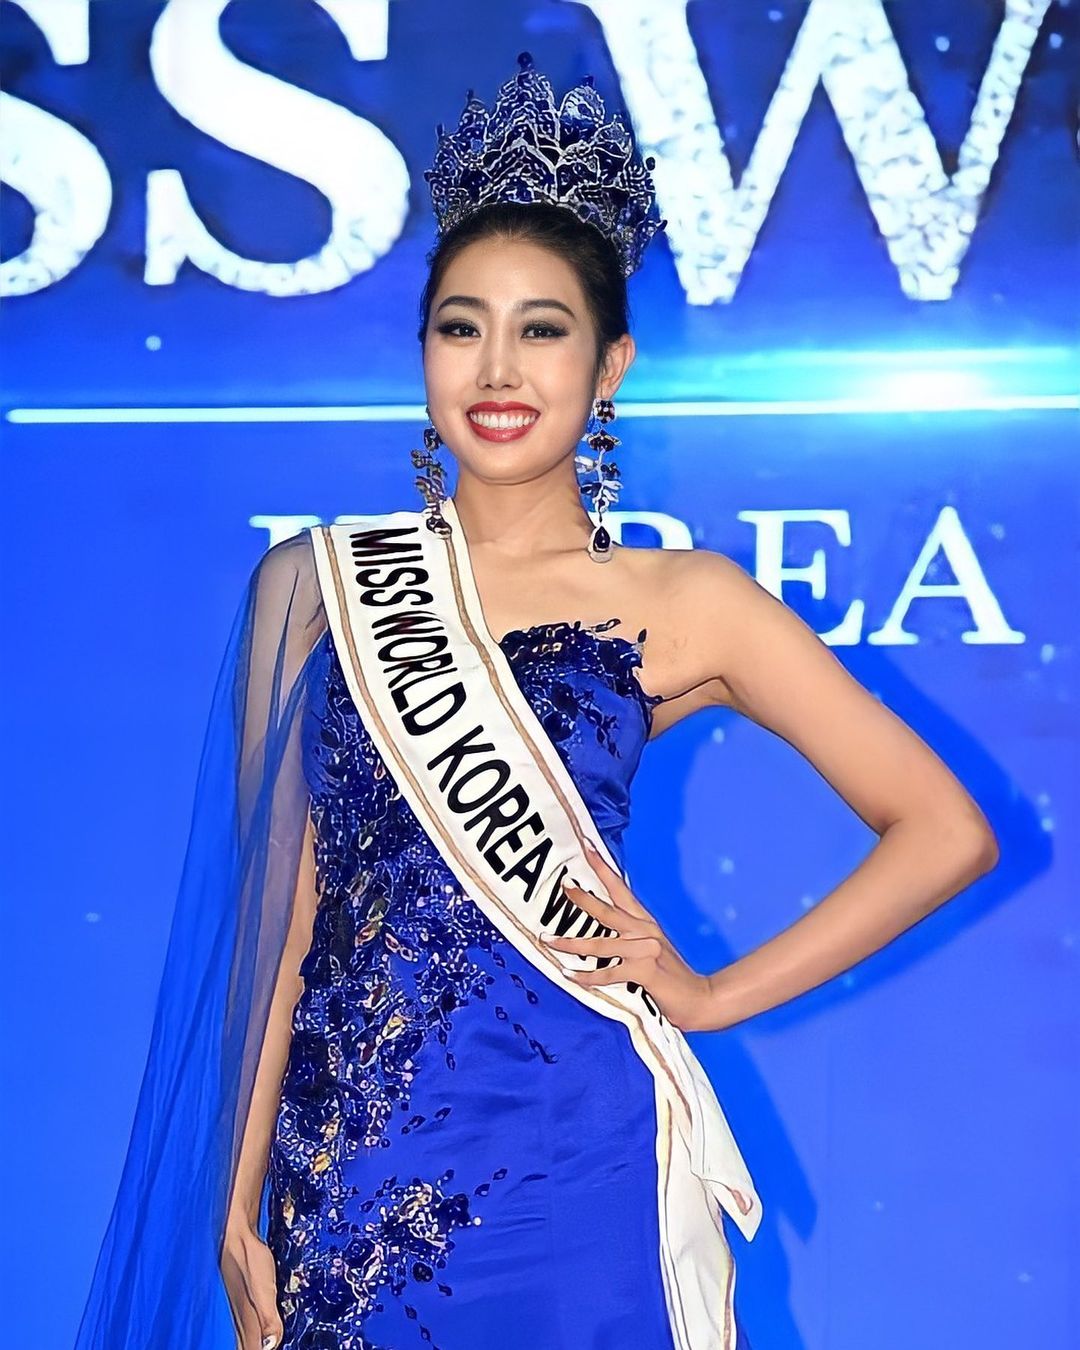 Sốc nặng nhan sắc dàn tân Hoa hậu Á hậu Hàn: Miss Universe đẹp hiếm có nay bị bóc trần, Miss World dọa khán giả khóc thét - Ảnh 8.